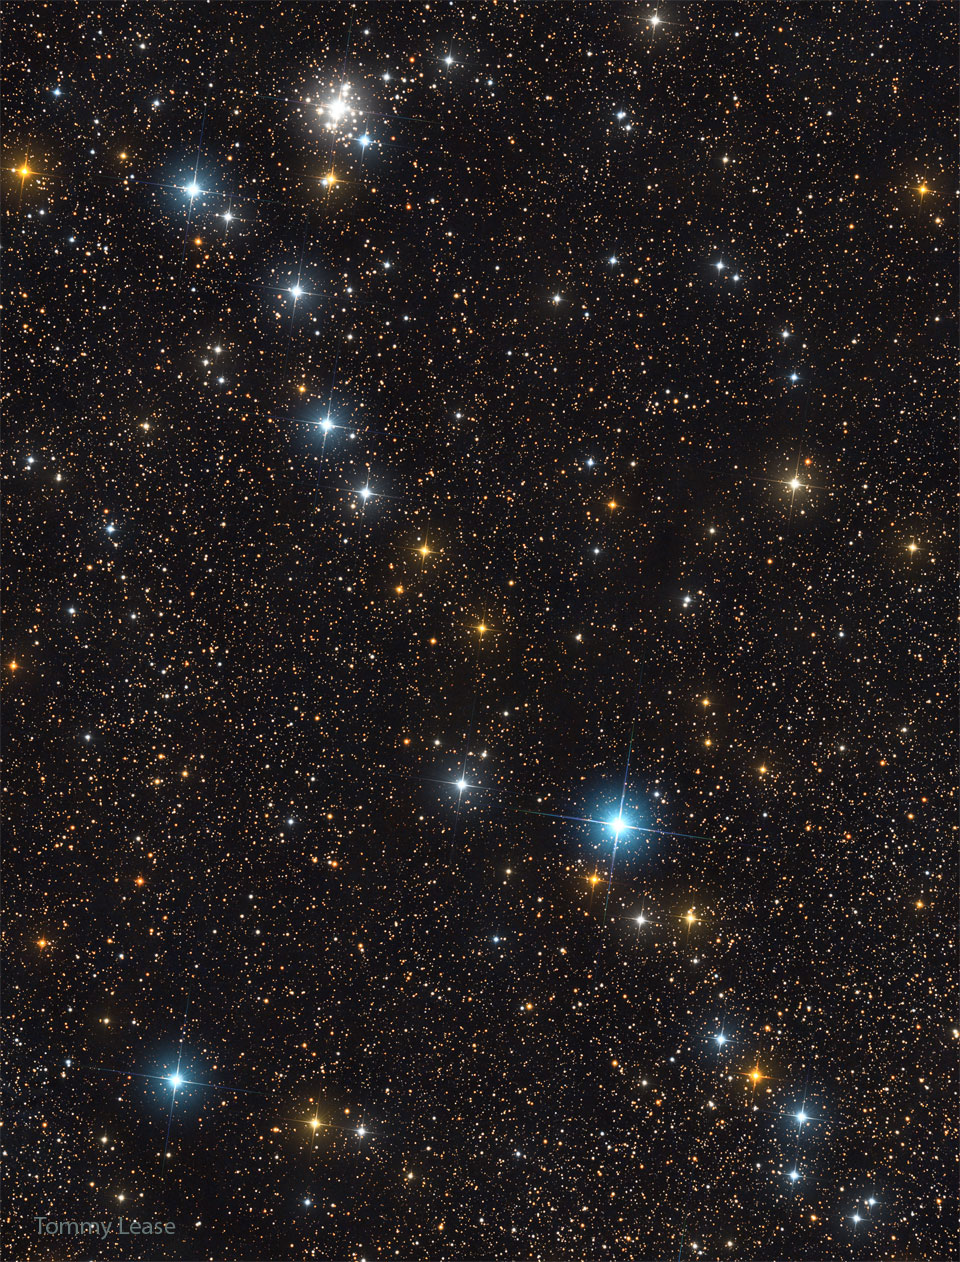 这张特色图片显示了一行明亮的恒星斜向散布在一个由更暗的恒星组成的星场上。在图像左上方附近也可以看到一簇恒星。有关更多详细信息，请参阅说明。